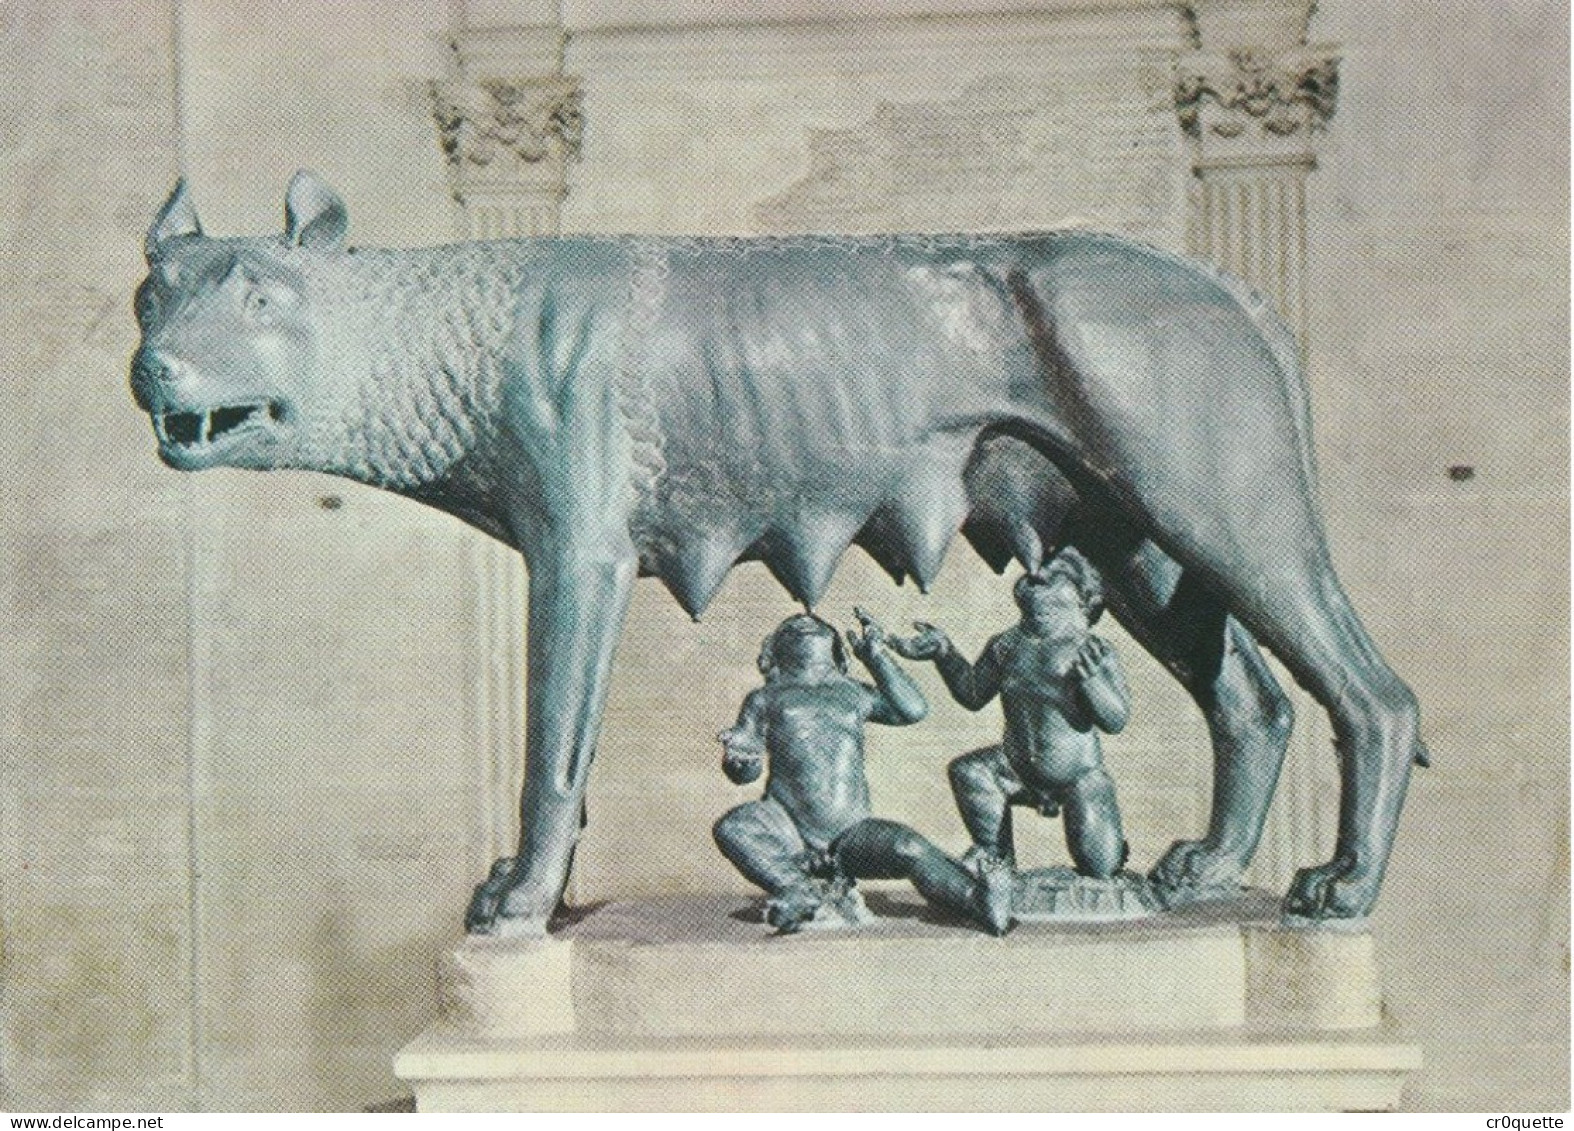 # ITALIE - ROME - ROMA / PANORAMAS et MONUMENTS vers 1950 en 8 CARTES POSTALES COULEUR